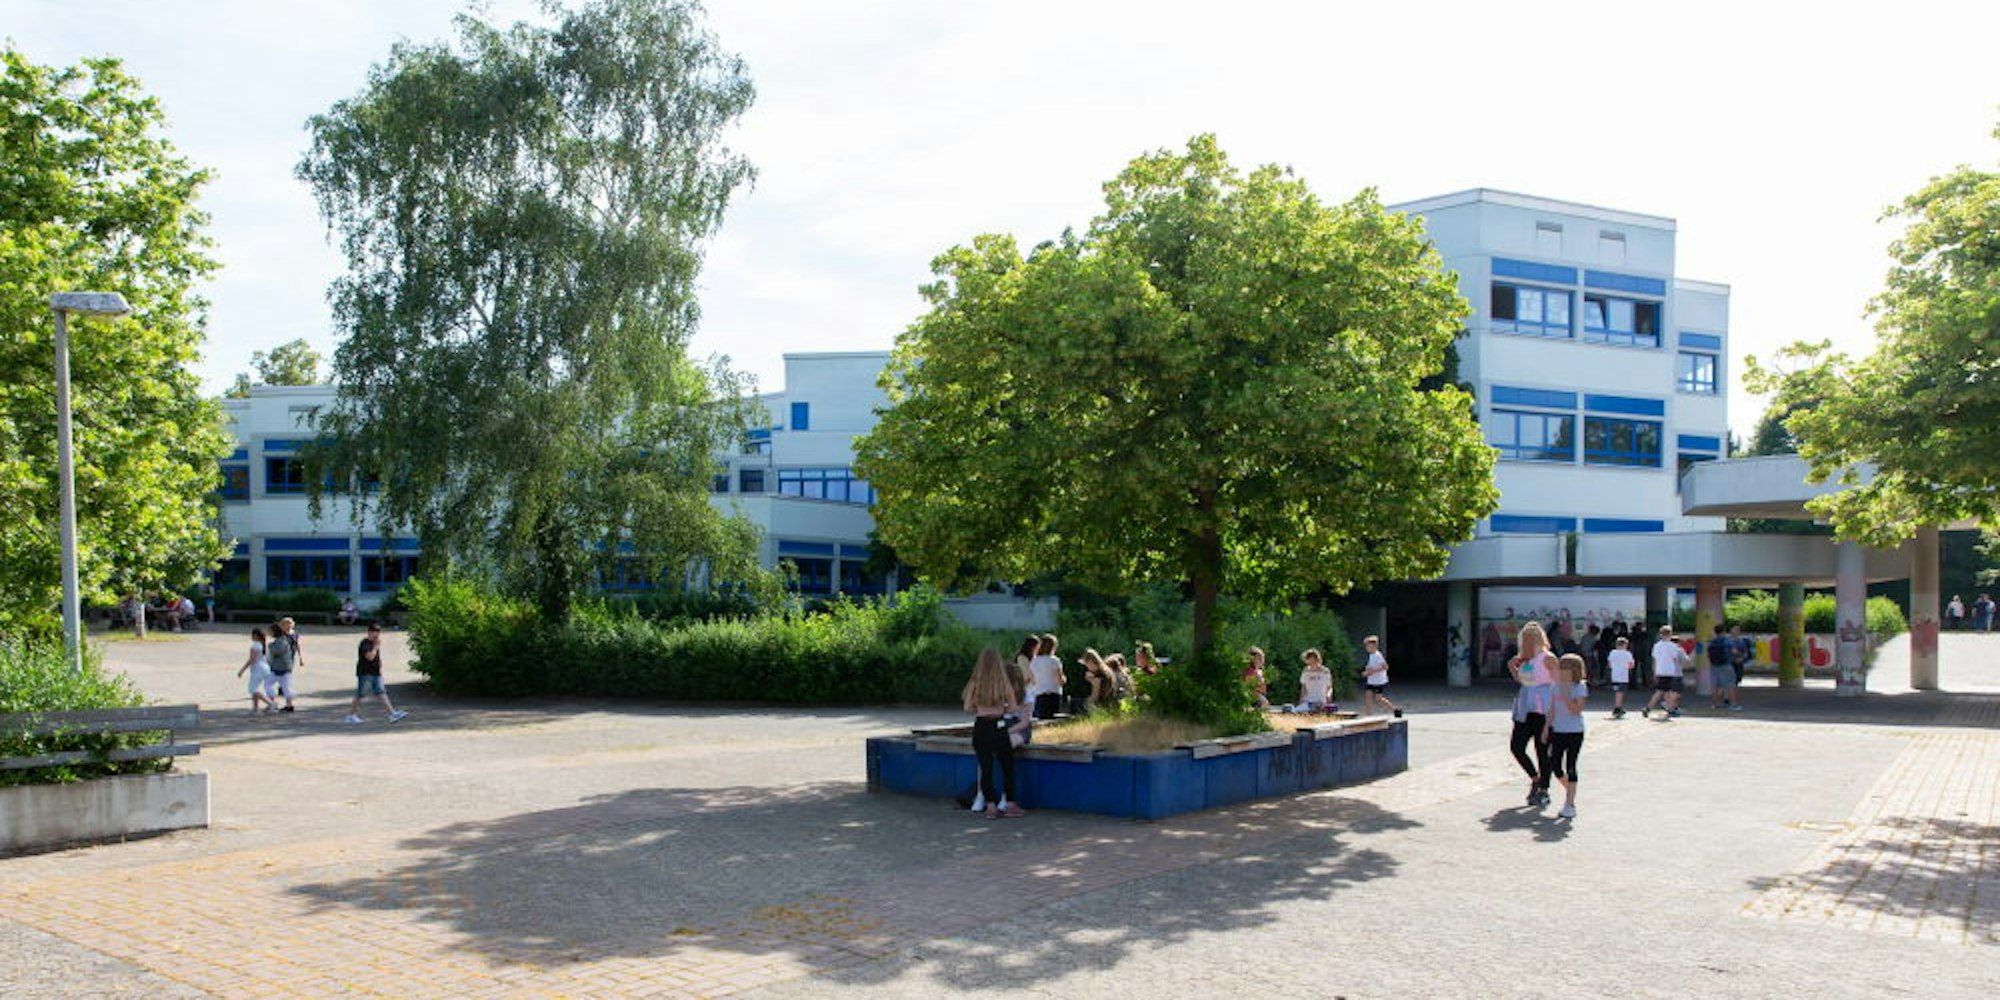 Die Sekundarschule in Heimerzheim ist die einzige weiterführende Schule in Swisttal. Die Auslastungszahlen, die Schüler-Lehrer-Relation und die Ausstattung sind sehr gut, die Eltern wollen aber lieber das das Etikett „Gesamtschule“ für ihre Kinder.